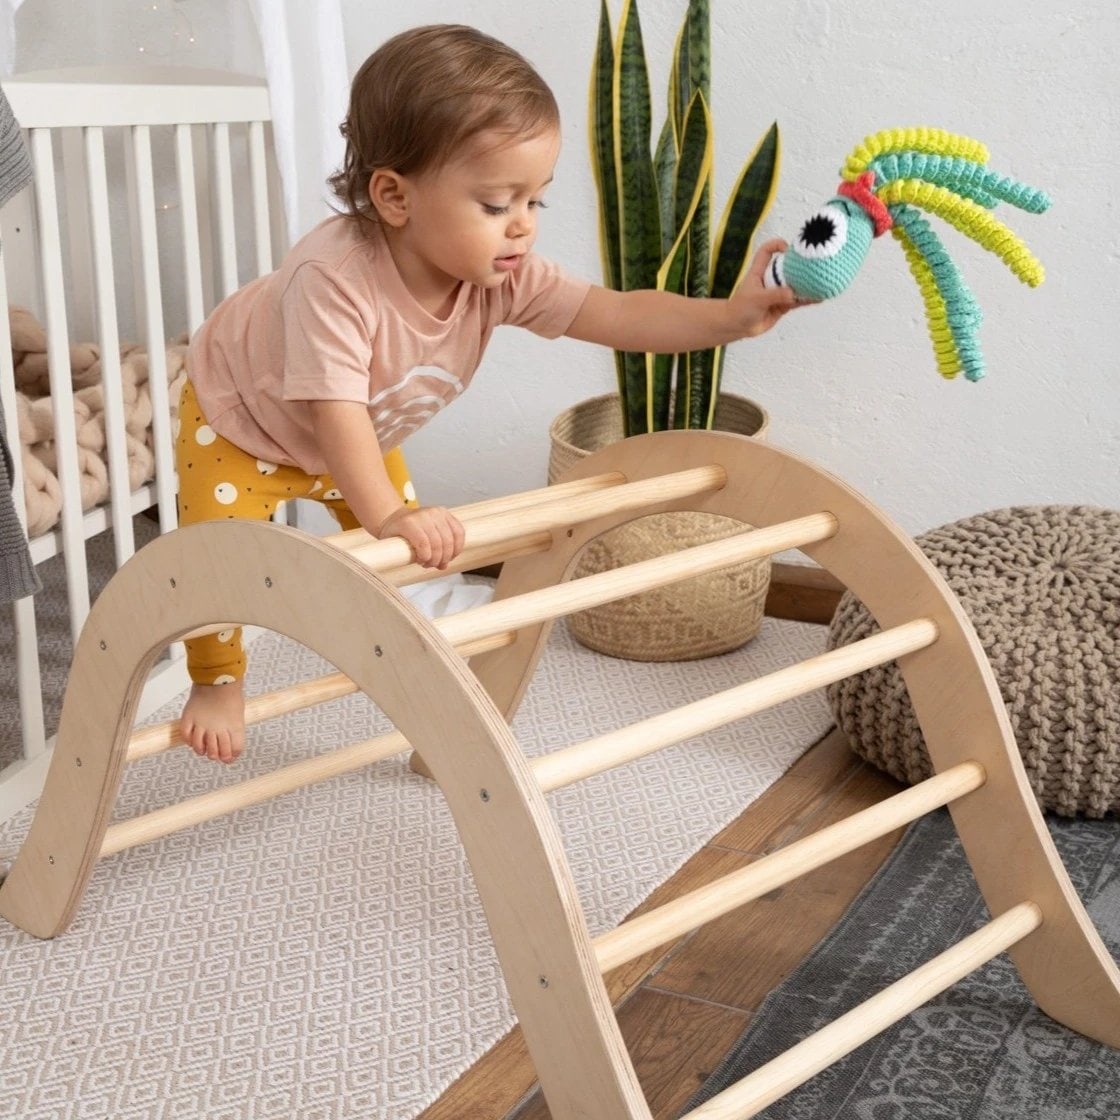 L'arche d'éveil Montessori : offrez à bébé ses premières découvertes